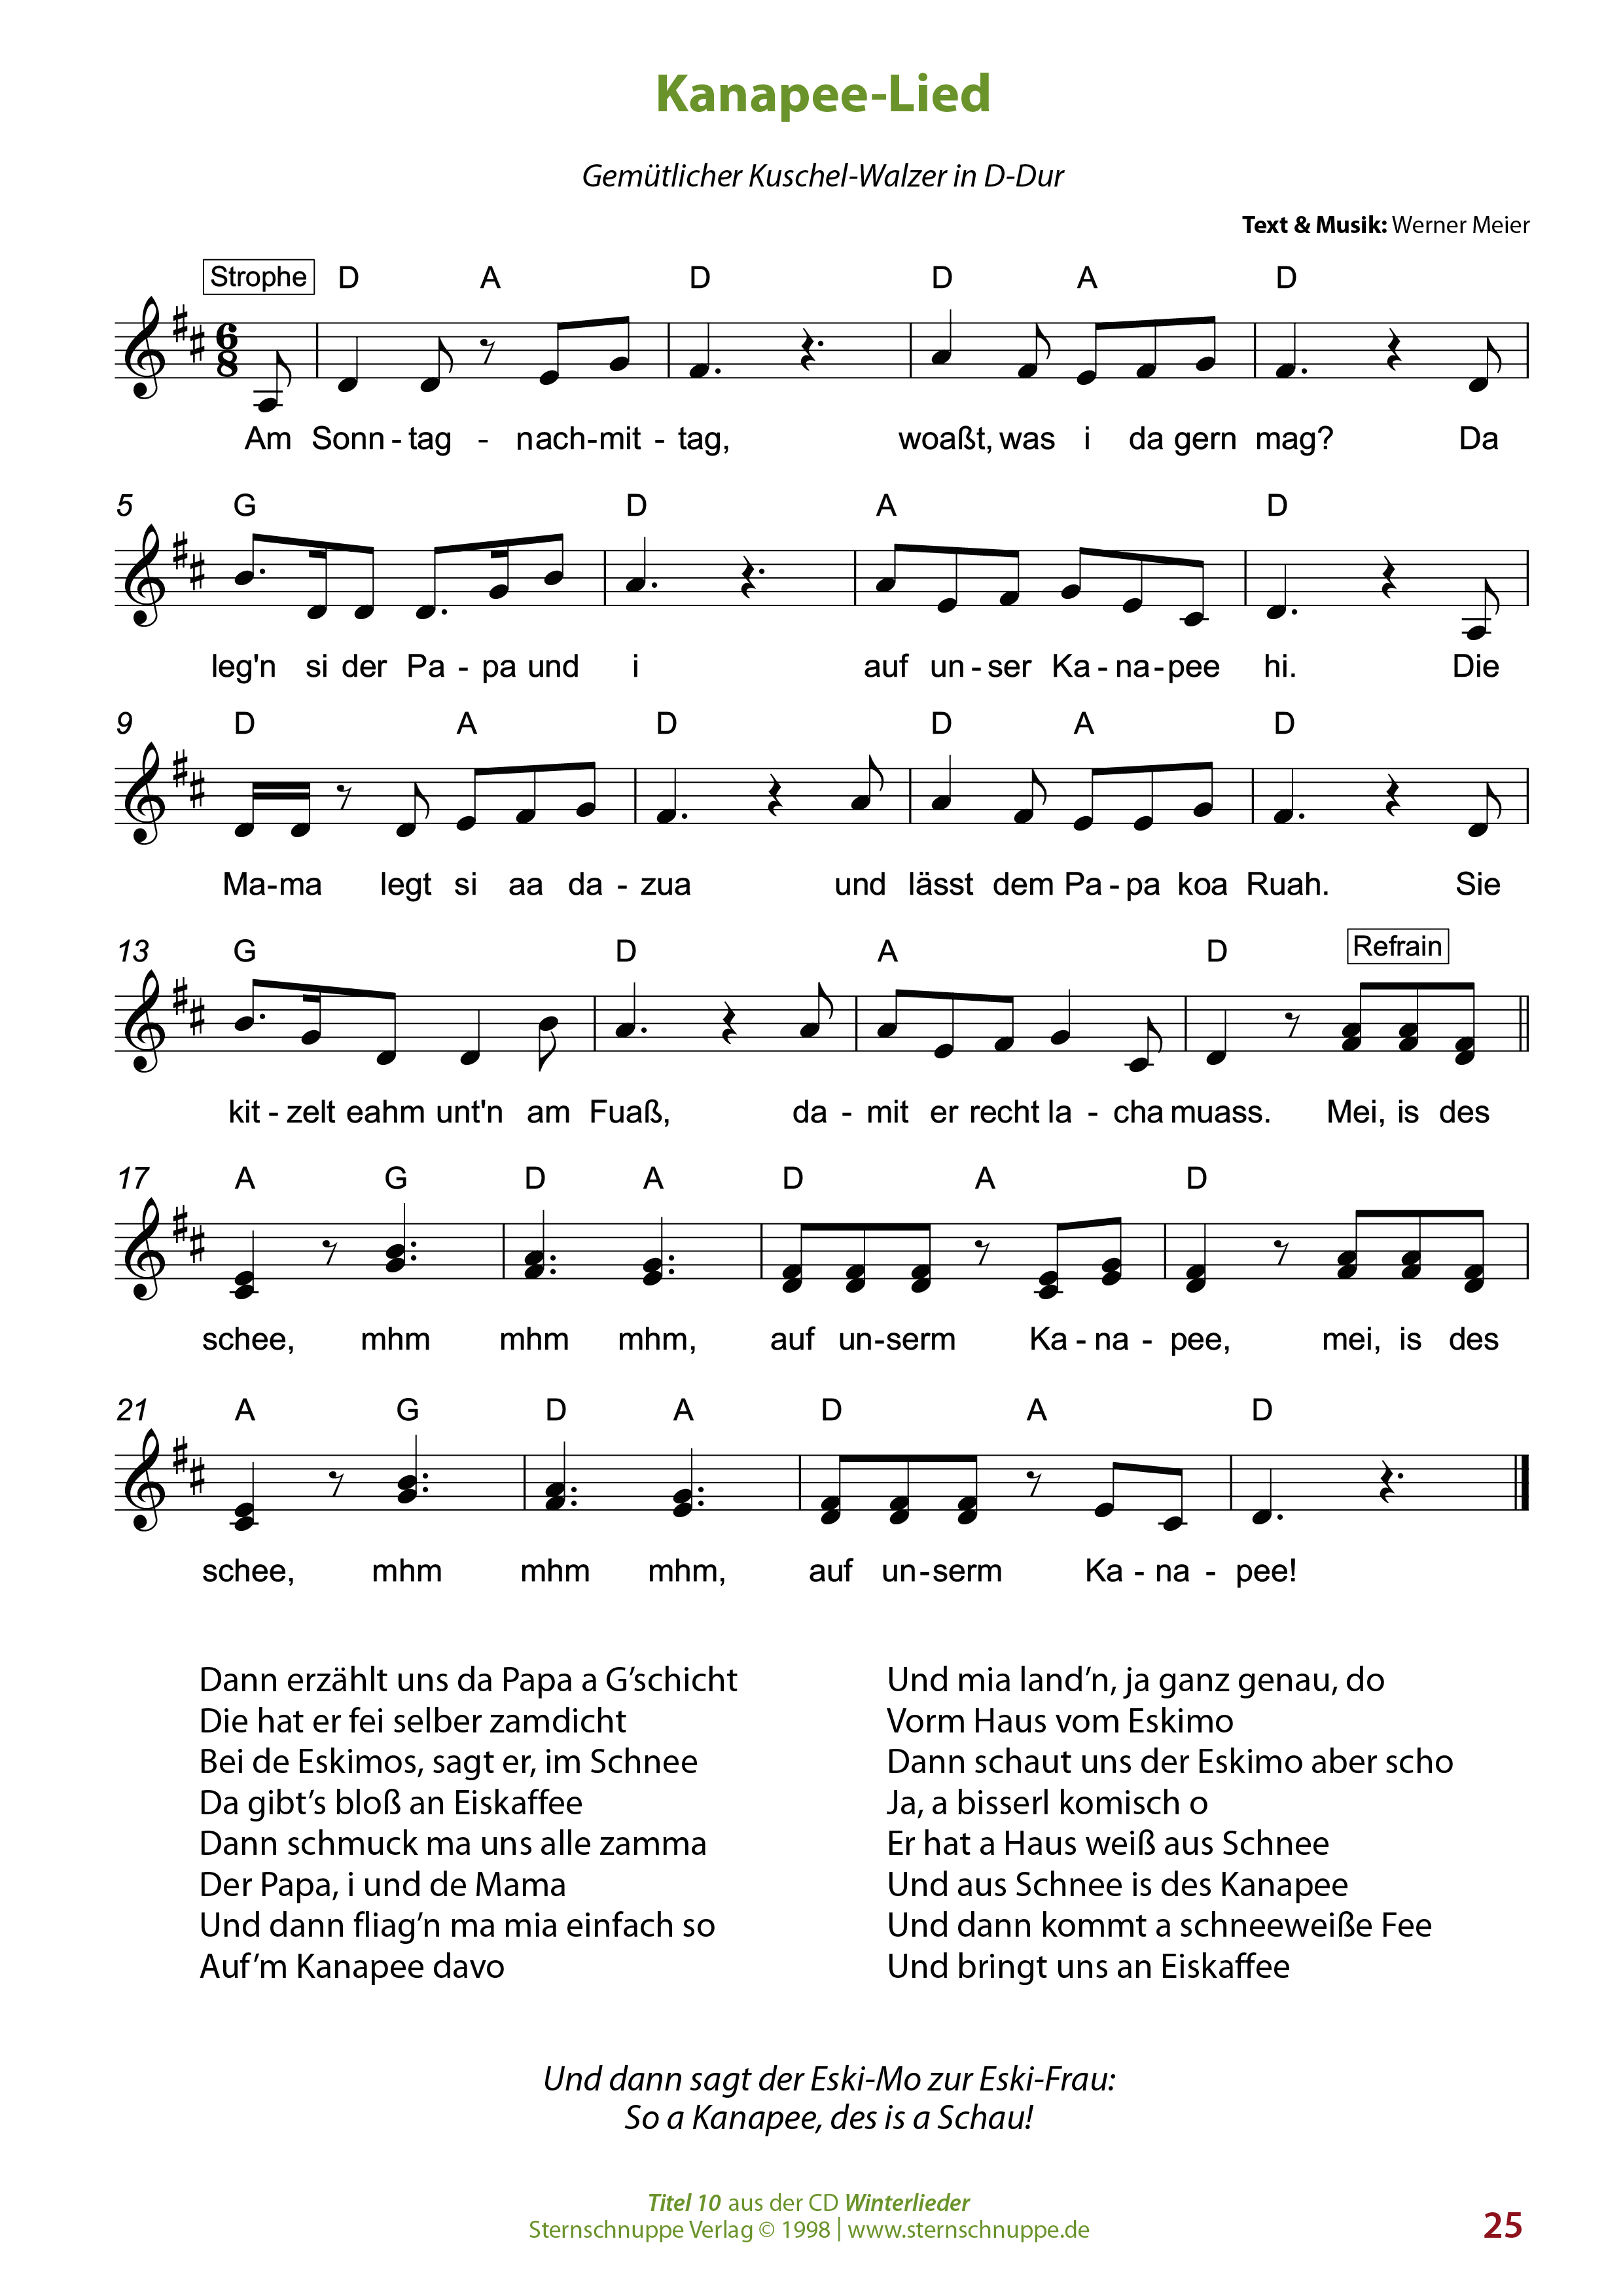 Liedtext, Akkorde und Noten vom Kinderlied Kanapee-Lied